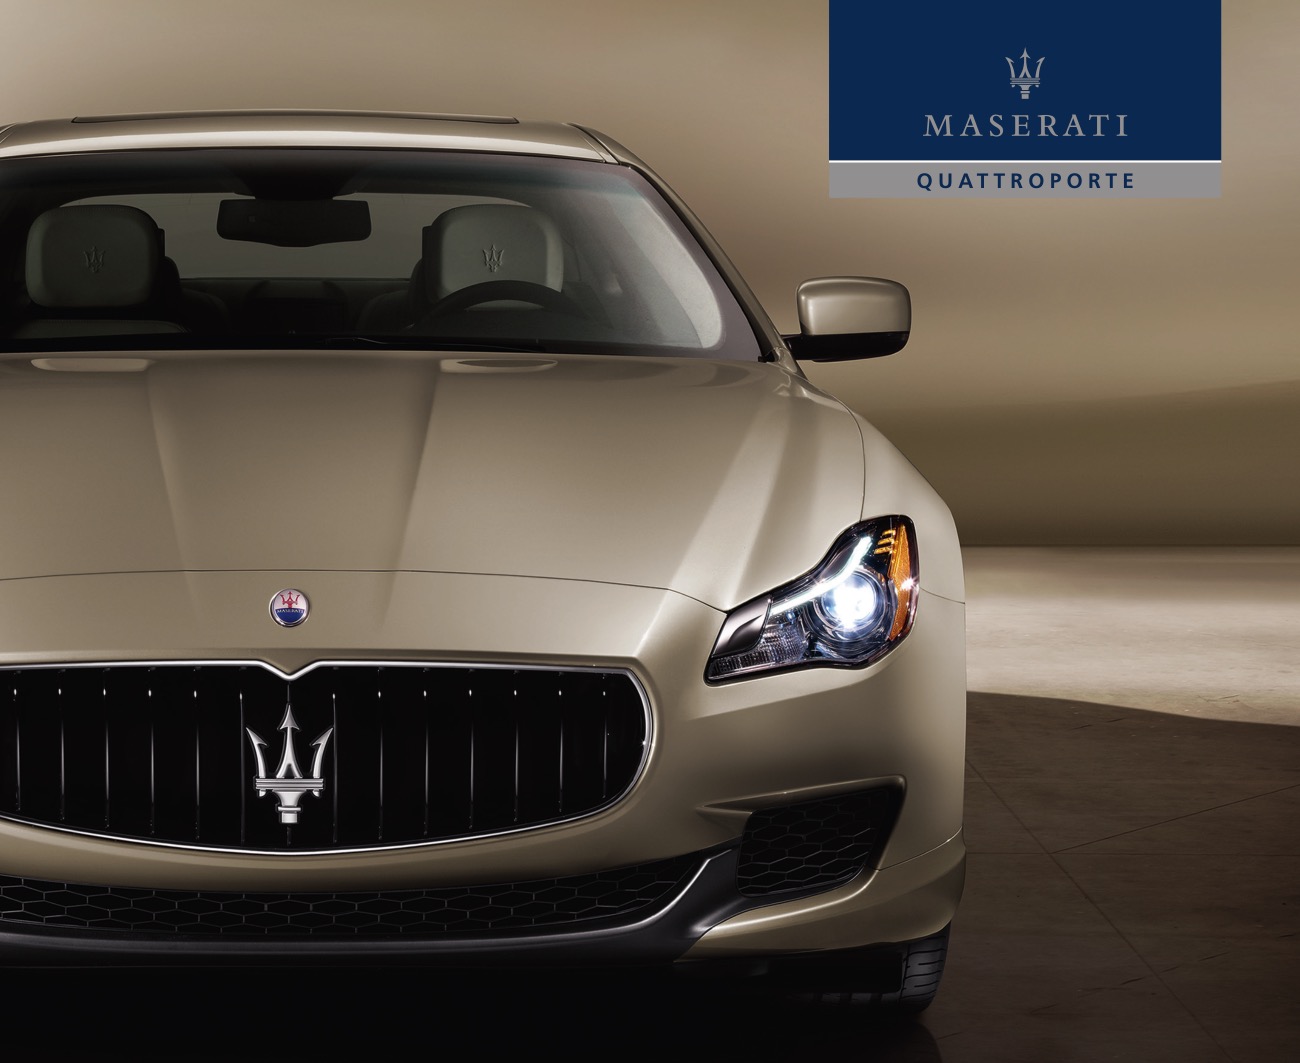 2013 Maserati Quattroporte Brochure